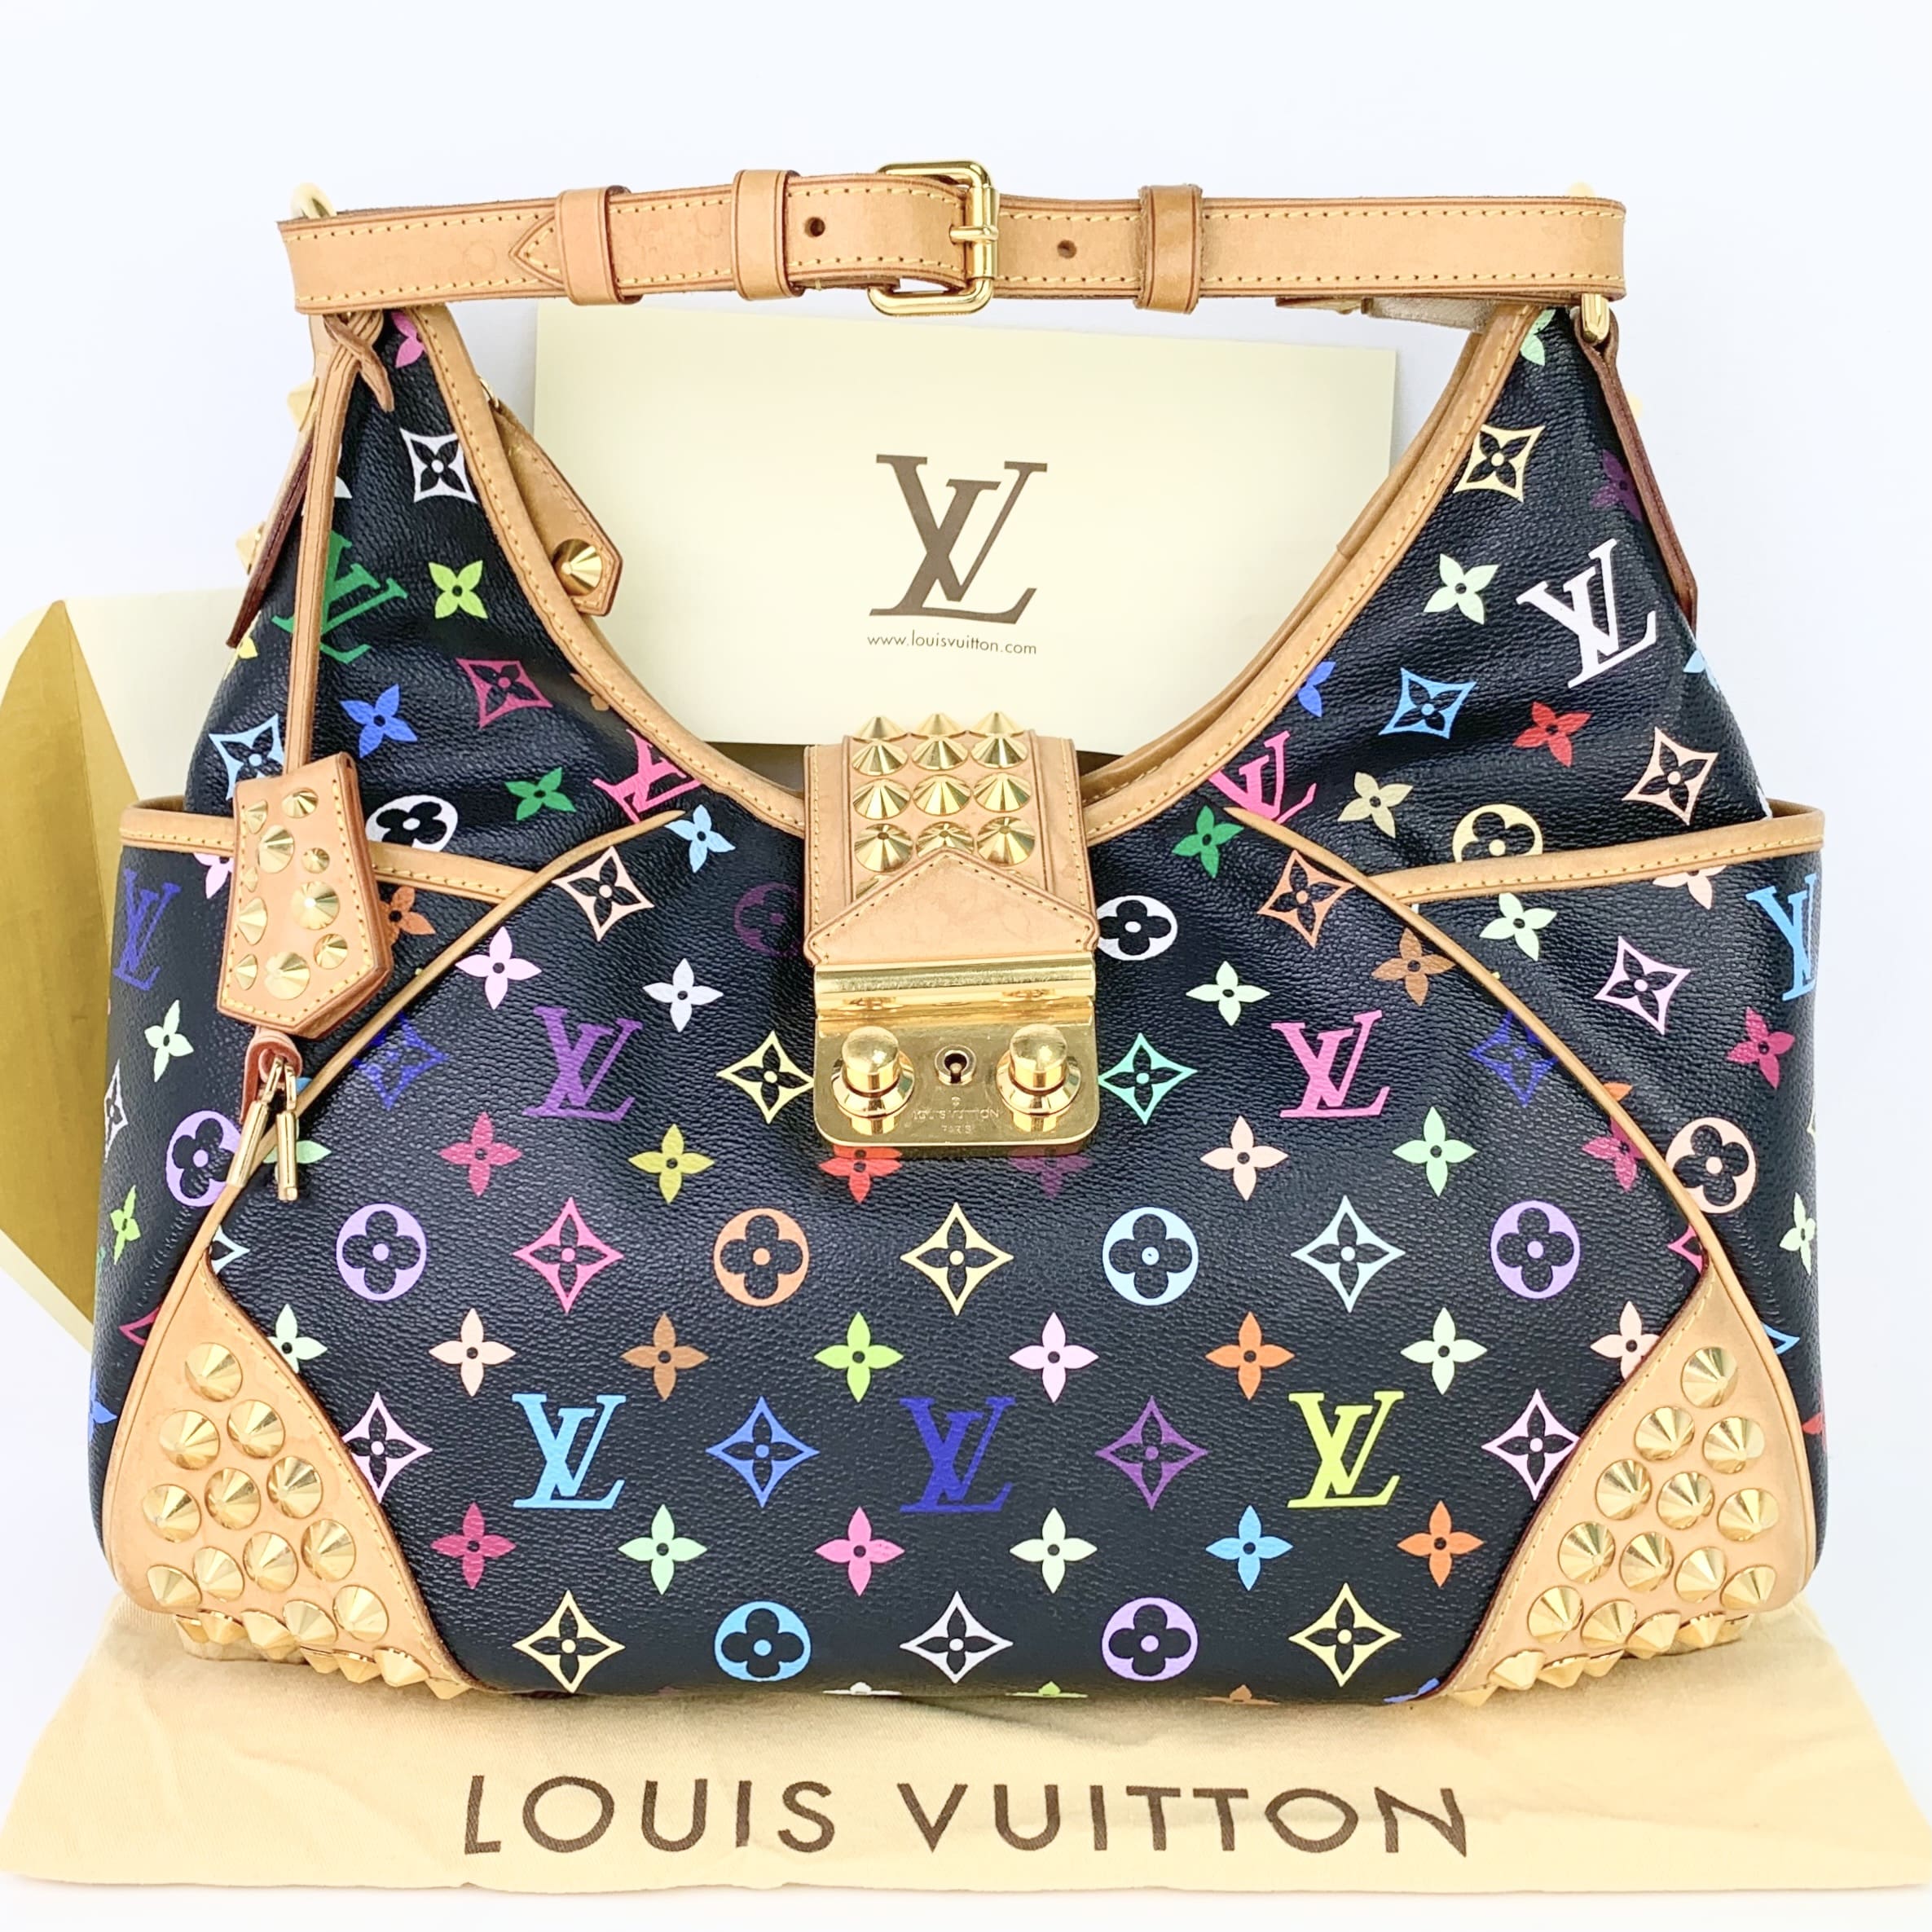 Louis Vuitton Chrissie MM in Noir Black Multicolor Limited Edition